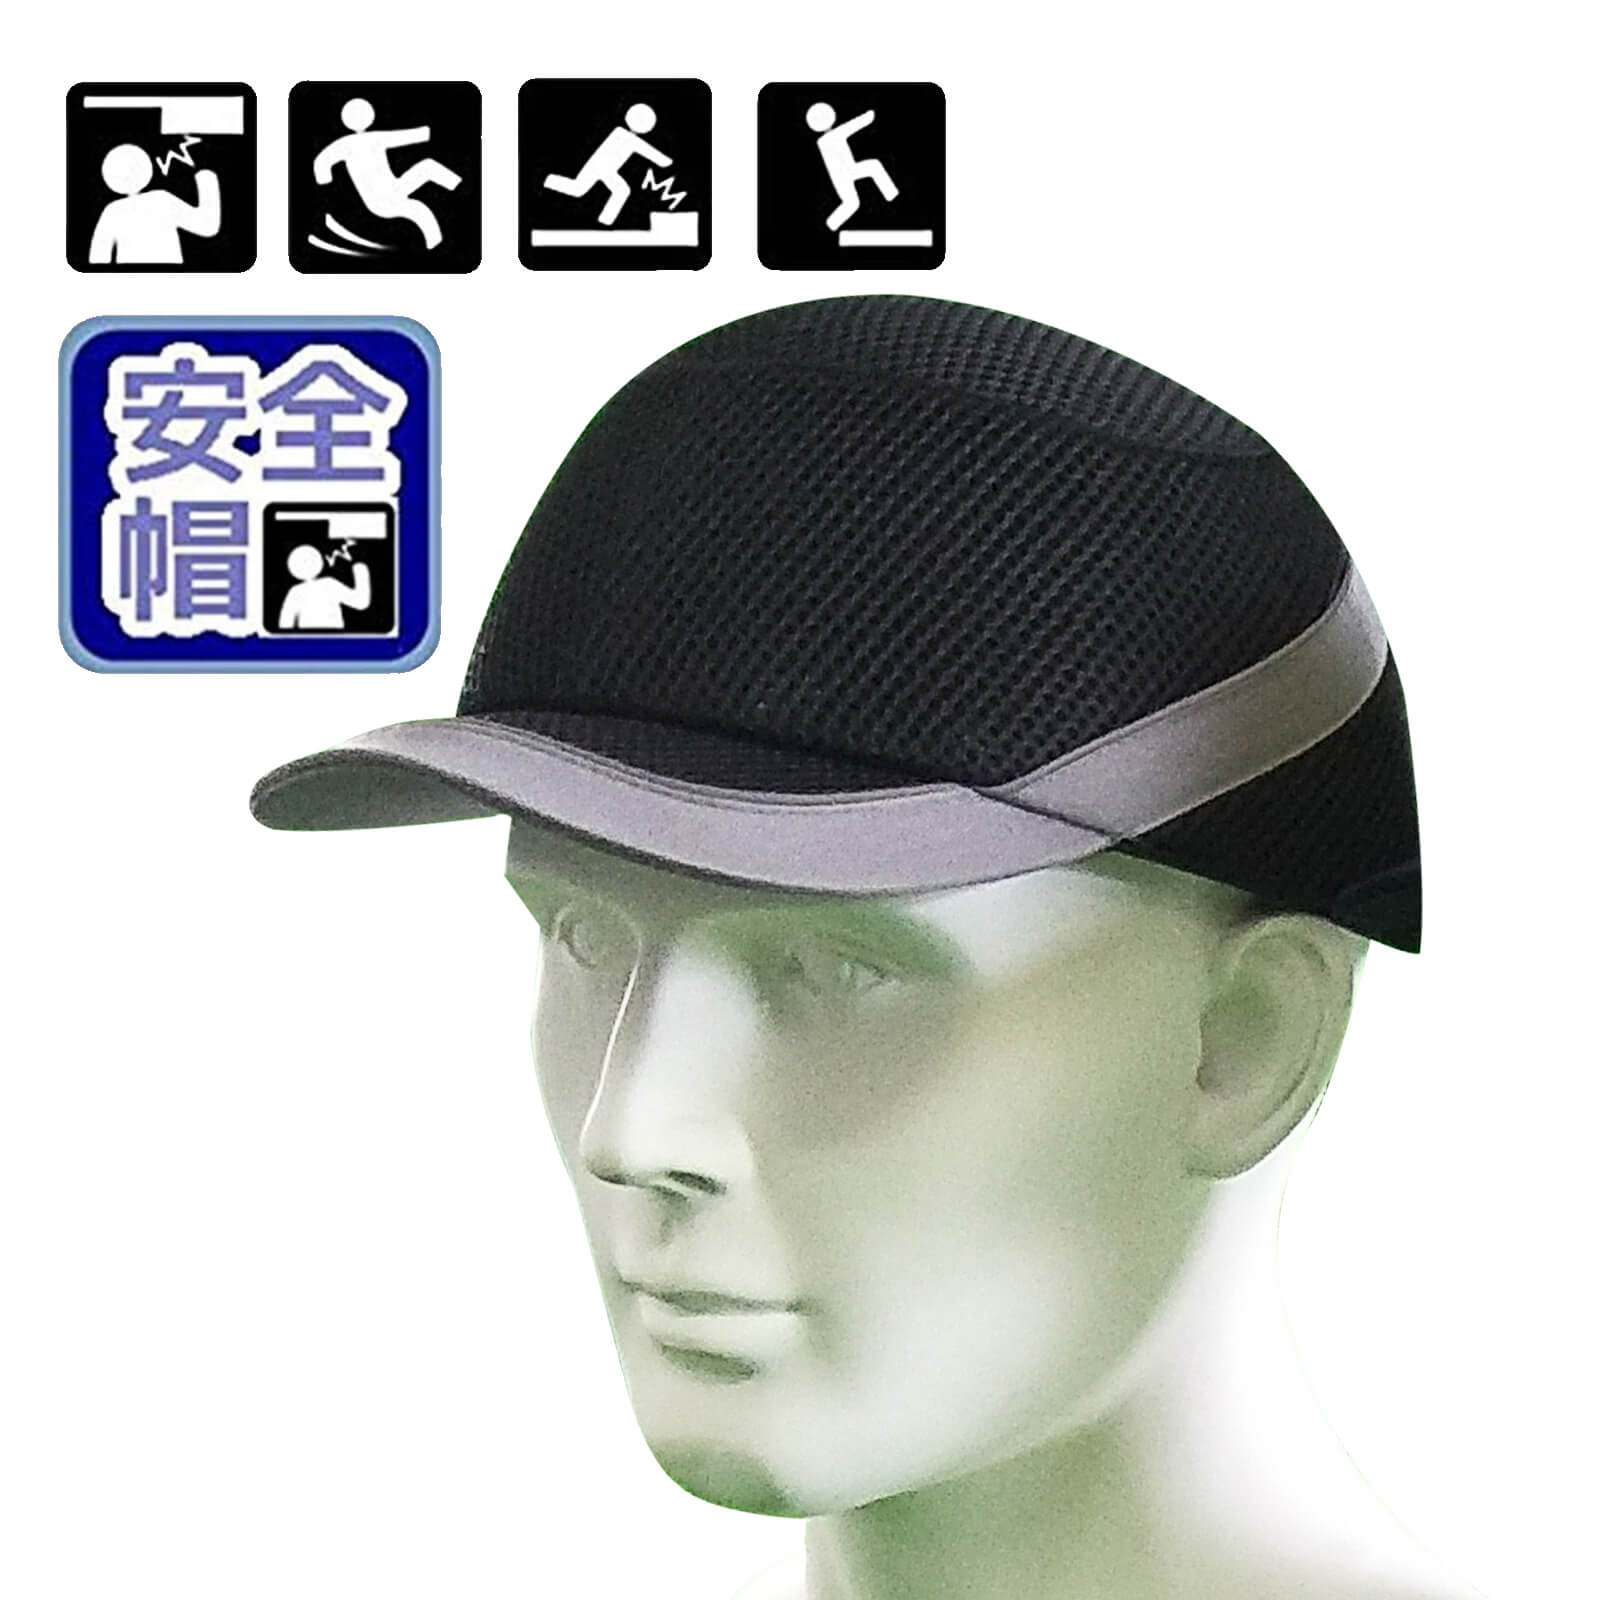 防災 ヘルメット 安全帽子 軽量 通気 CE安全規格 汗取り 熱中症対策 軽作業用/ 工事用/ 災害